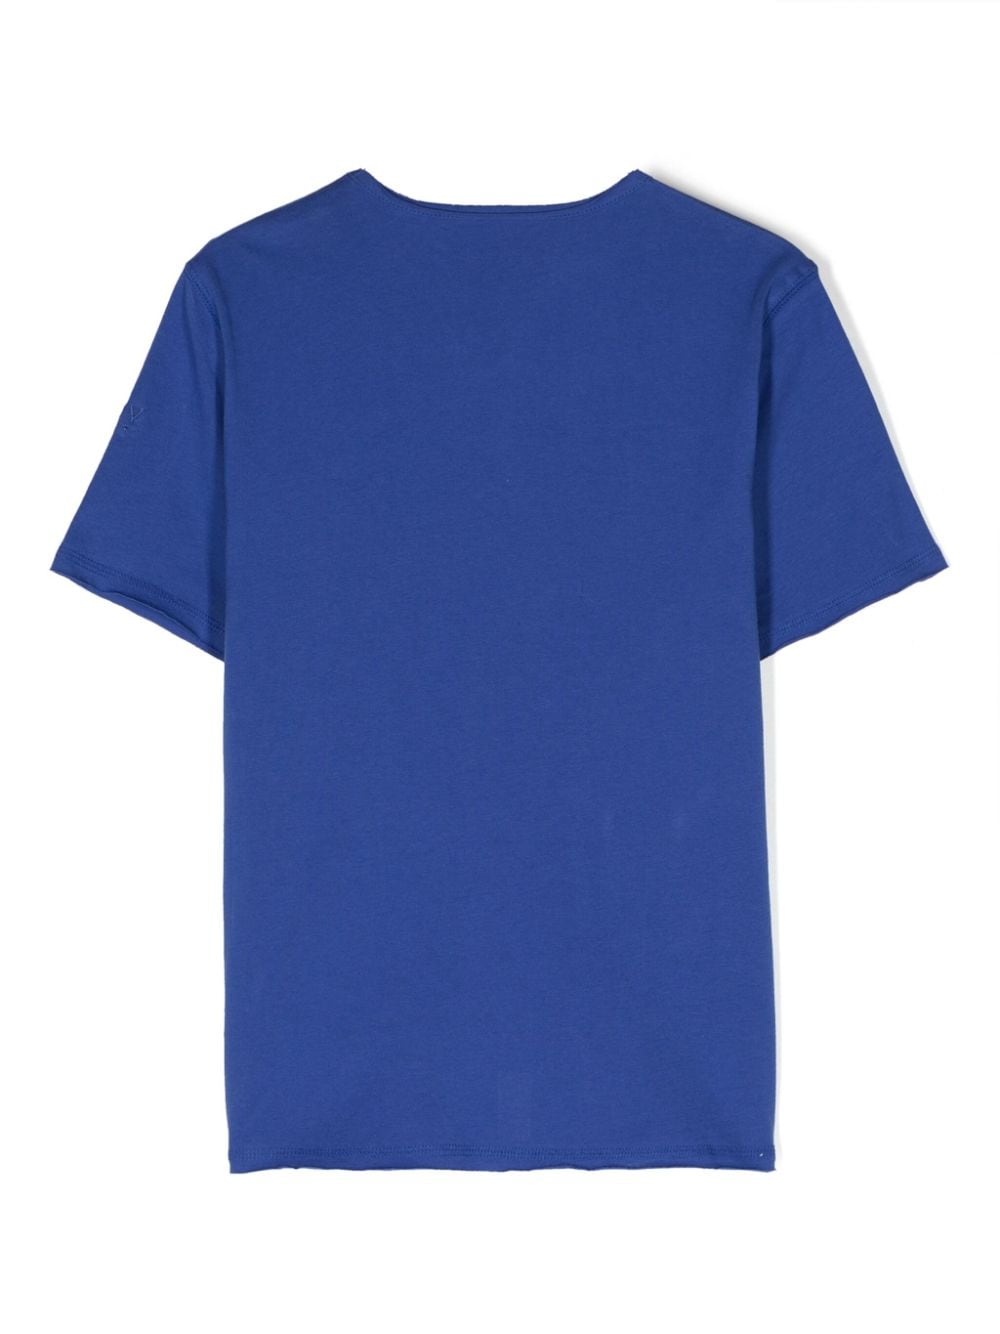 T-shirt garçon bleu